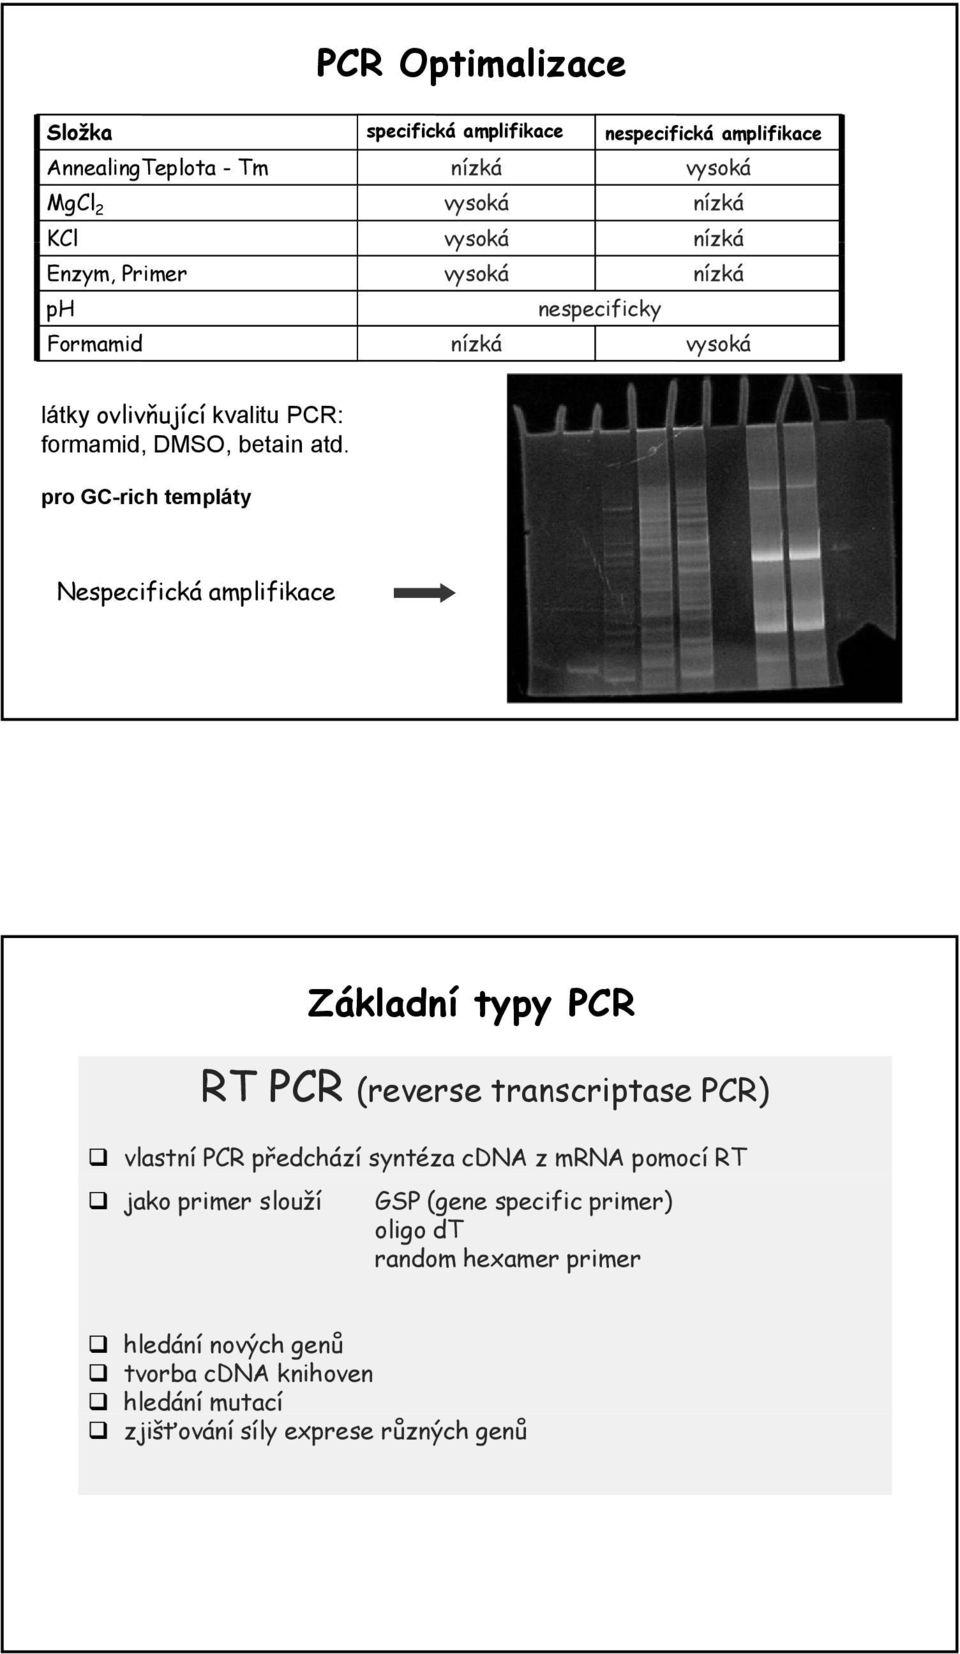 pro GC-rich templáty Nespecifická amplifikace Základní typy PCR RT PCR (reverse transcriptase PCR) vlastní PCR předchází syntéza cdna z mrna